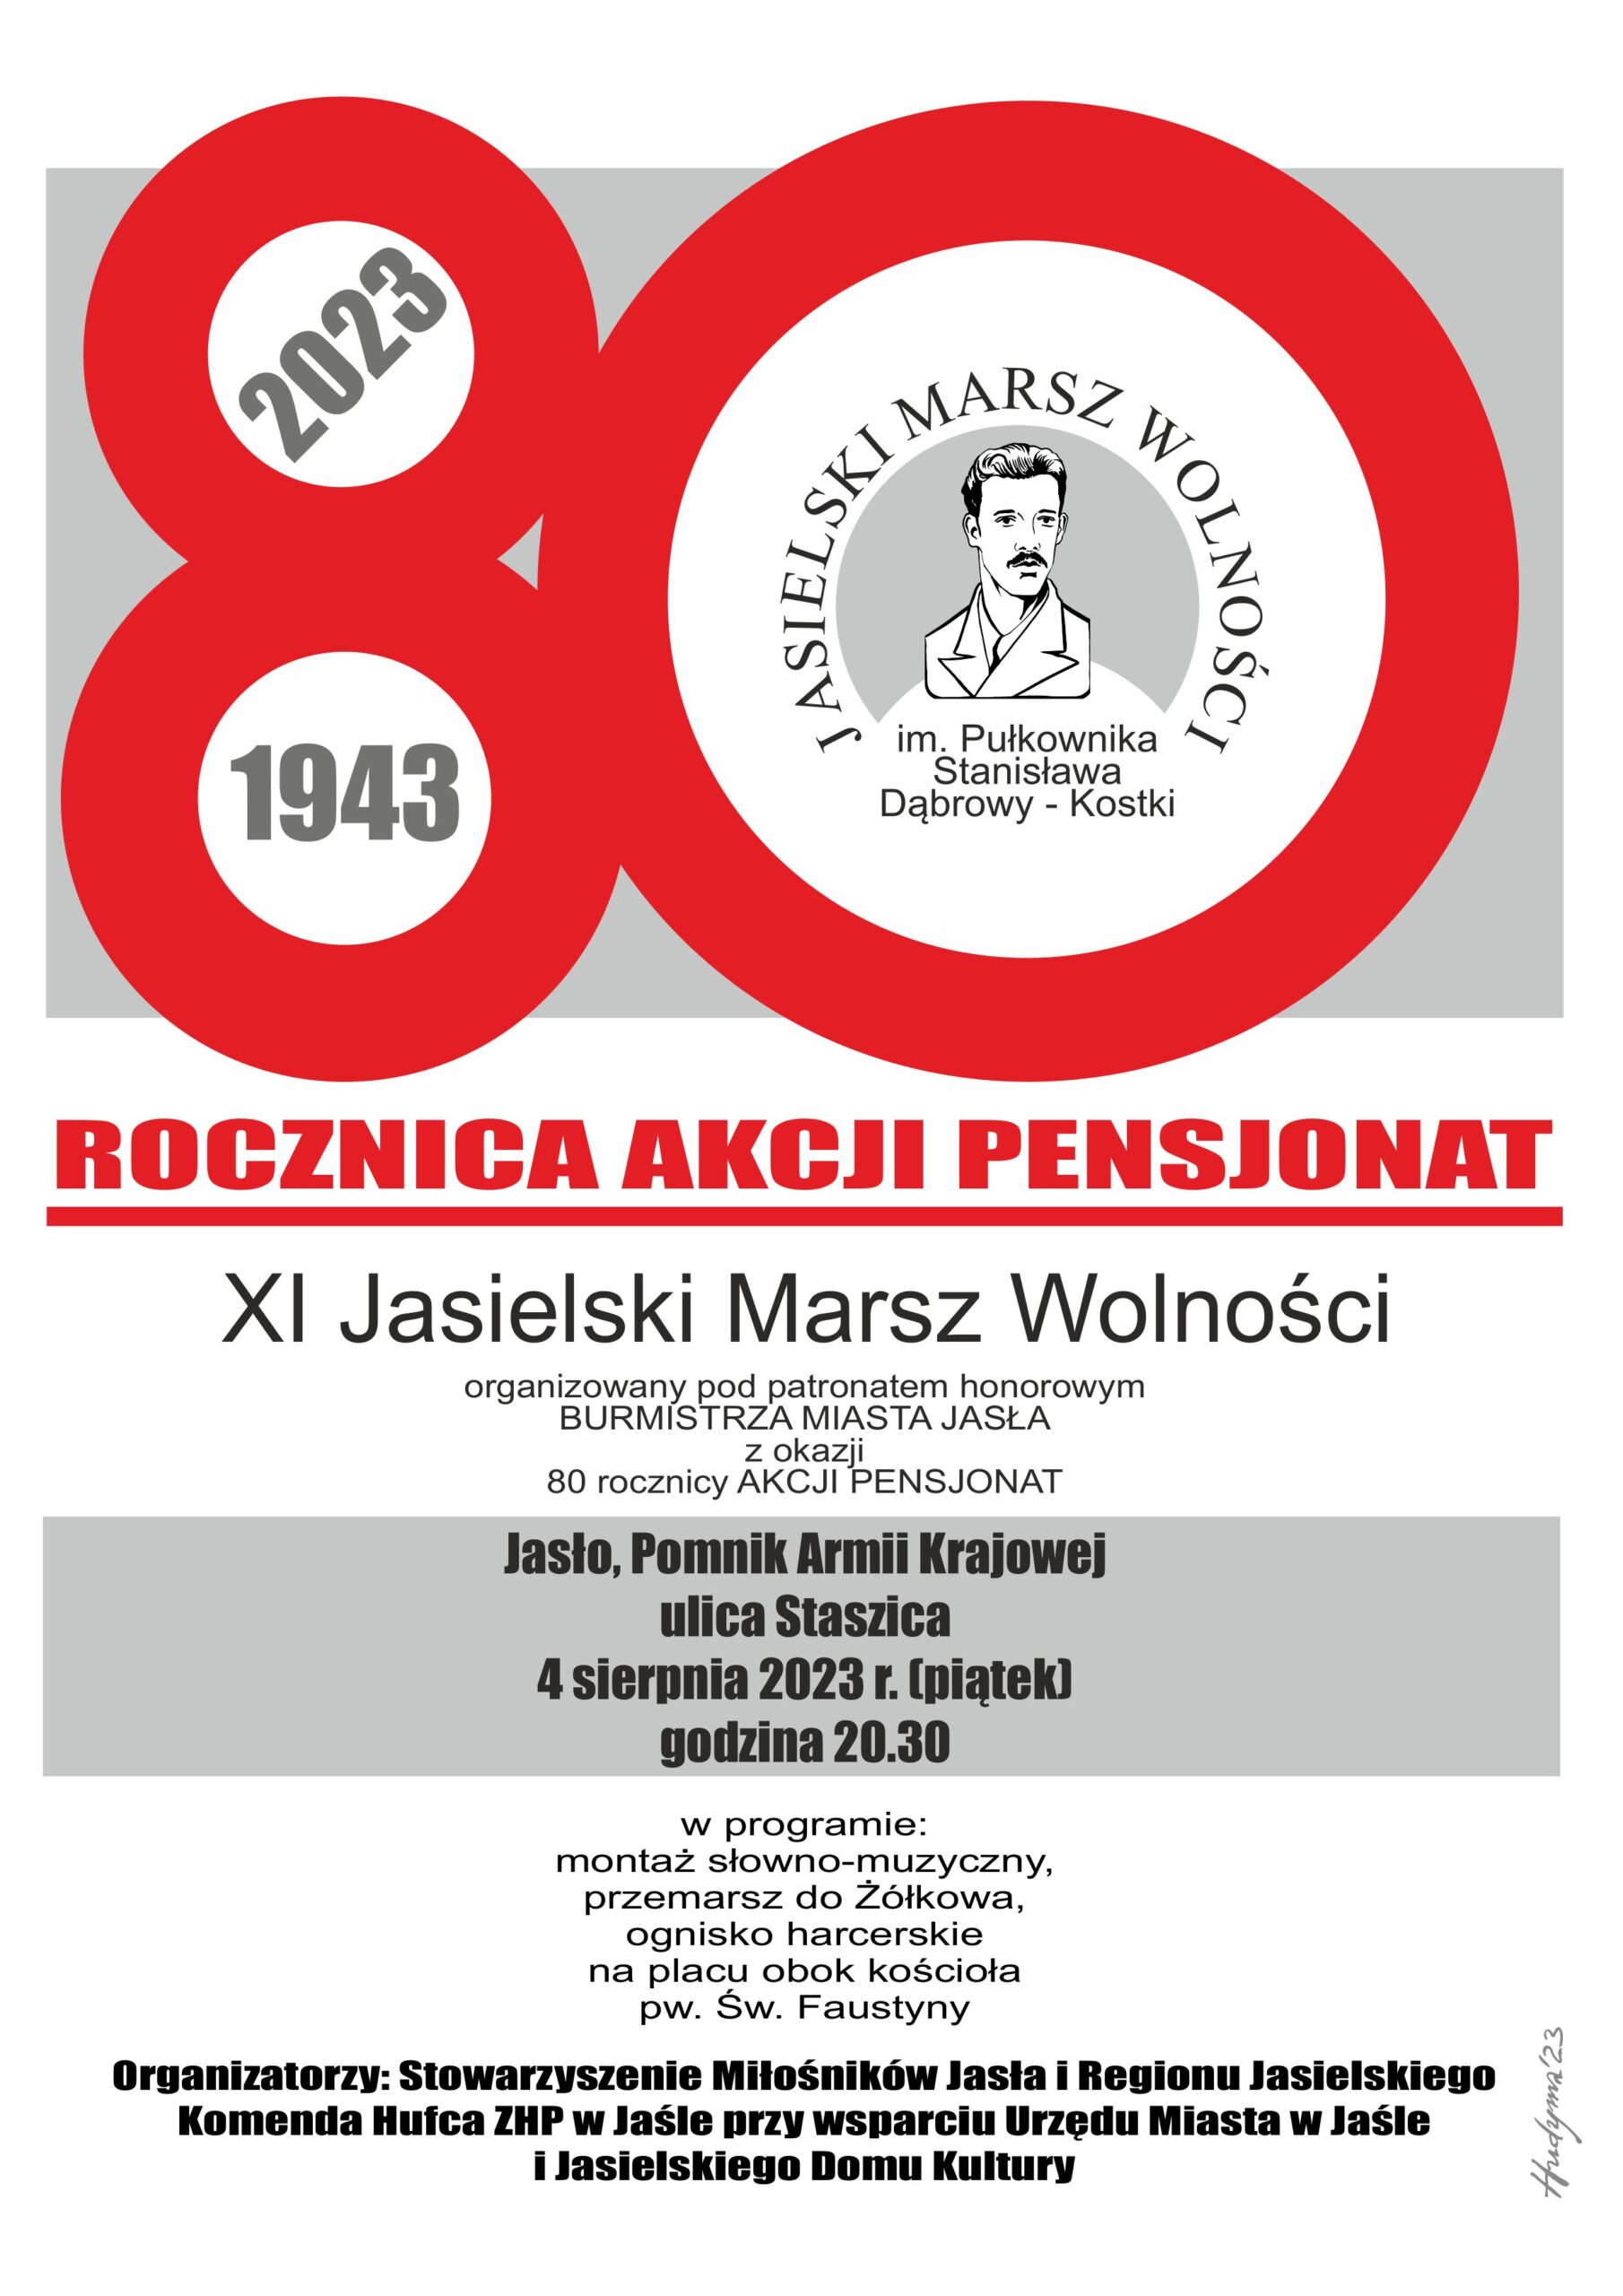 80 rocznica Akcji Pensjonat – XI Jasielski Marsz Wolności im. pułkownika Stanisława Dąbrowy-Kostki